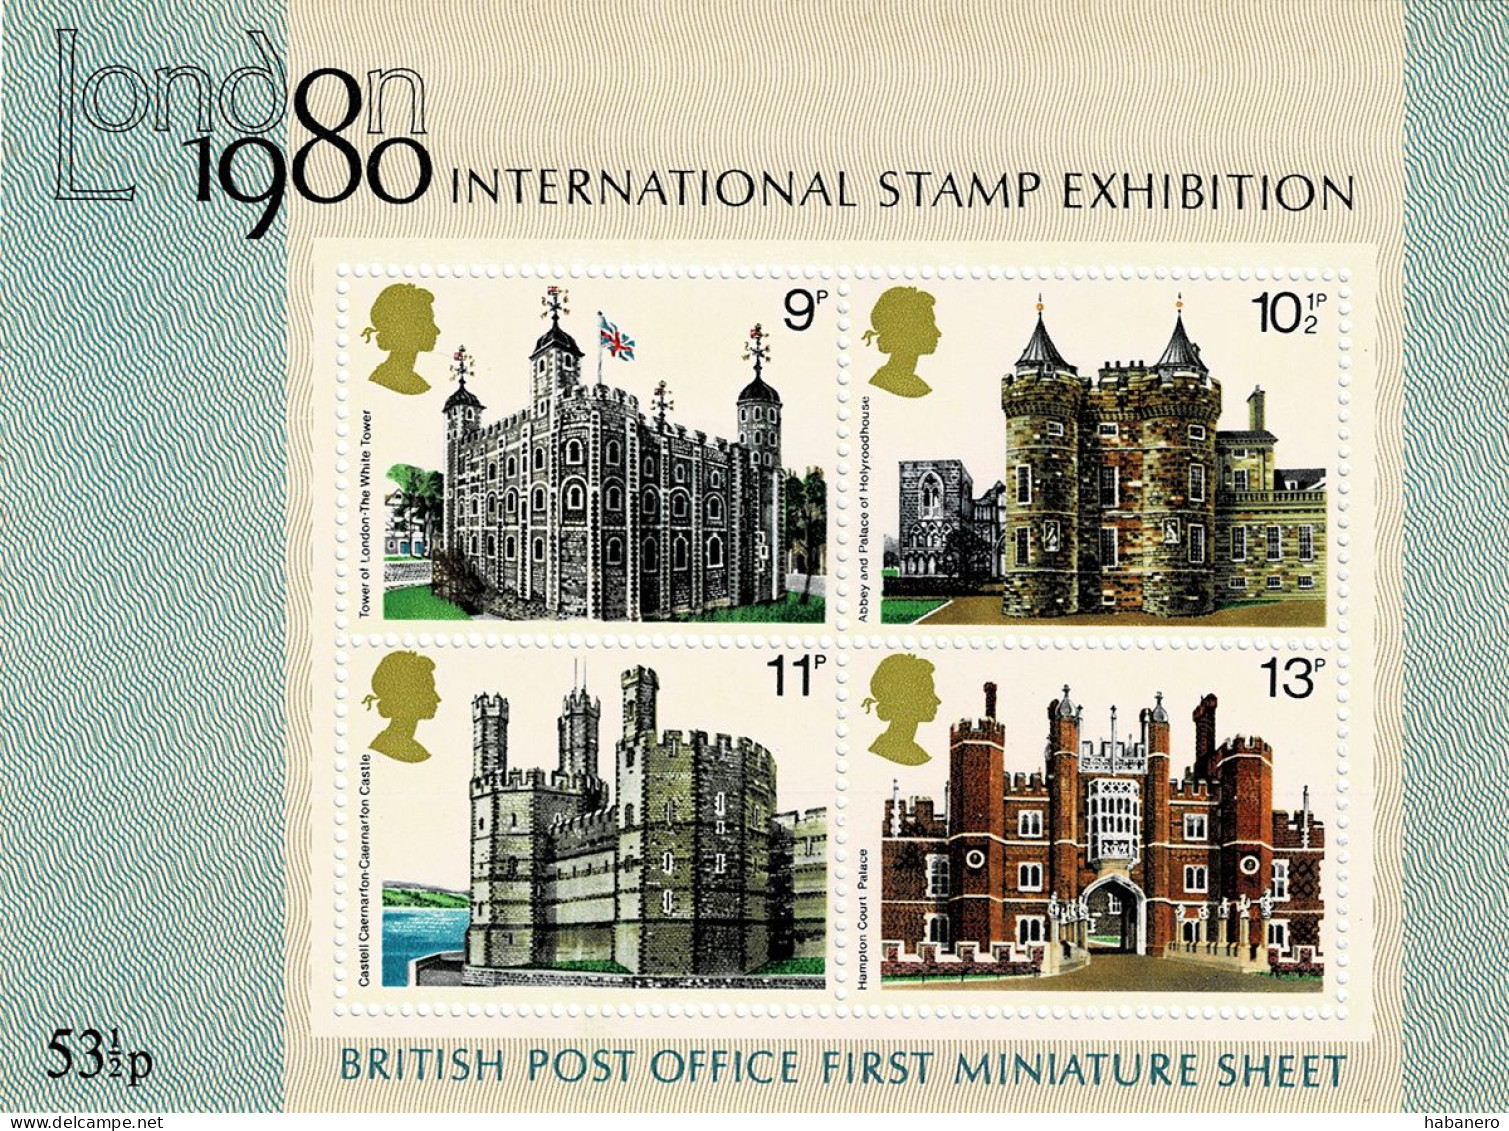 GREAT BRITIAN 1978 Mi BL 1 LONDON INTERNATIONAL STAMP EXHIBITION MINT MINIATURE SHEET ** - Briefmarkenausstellungen